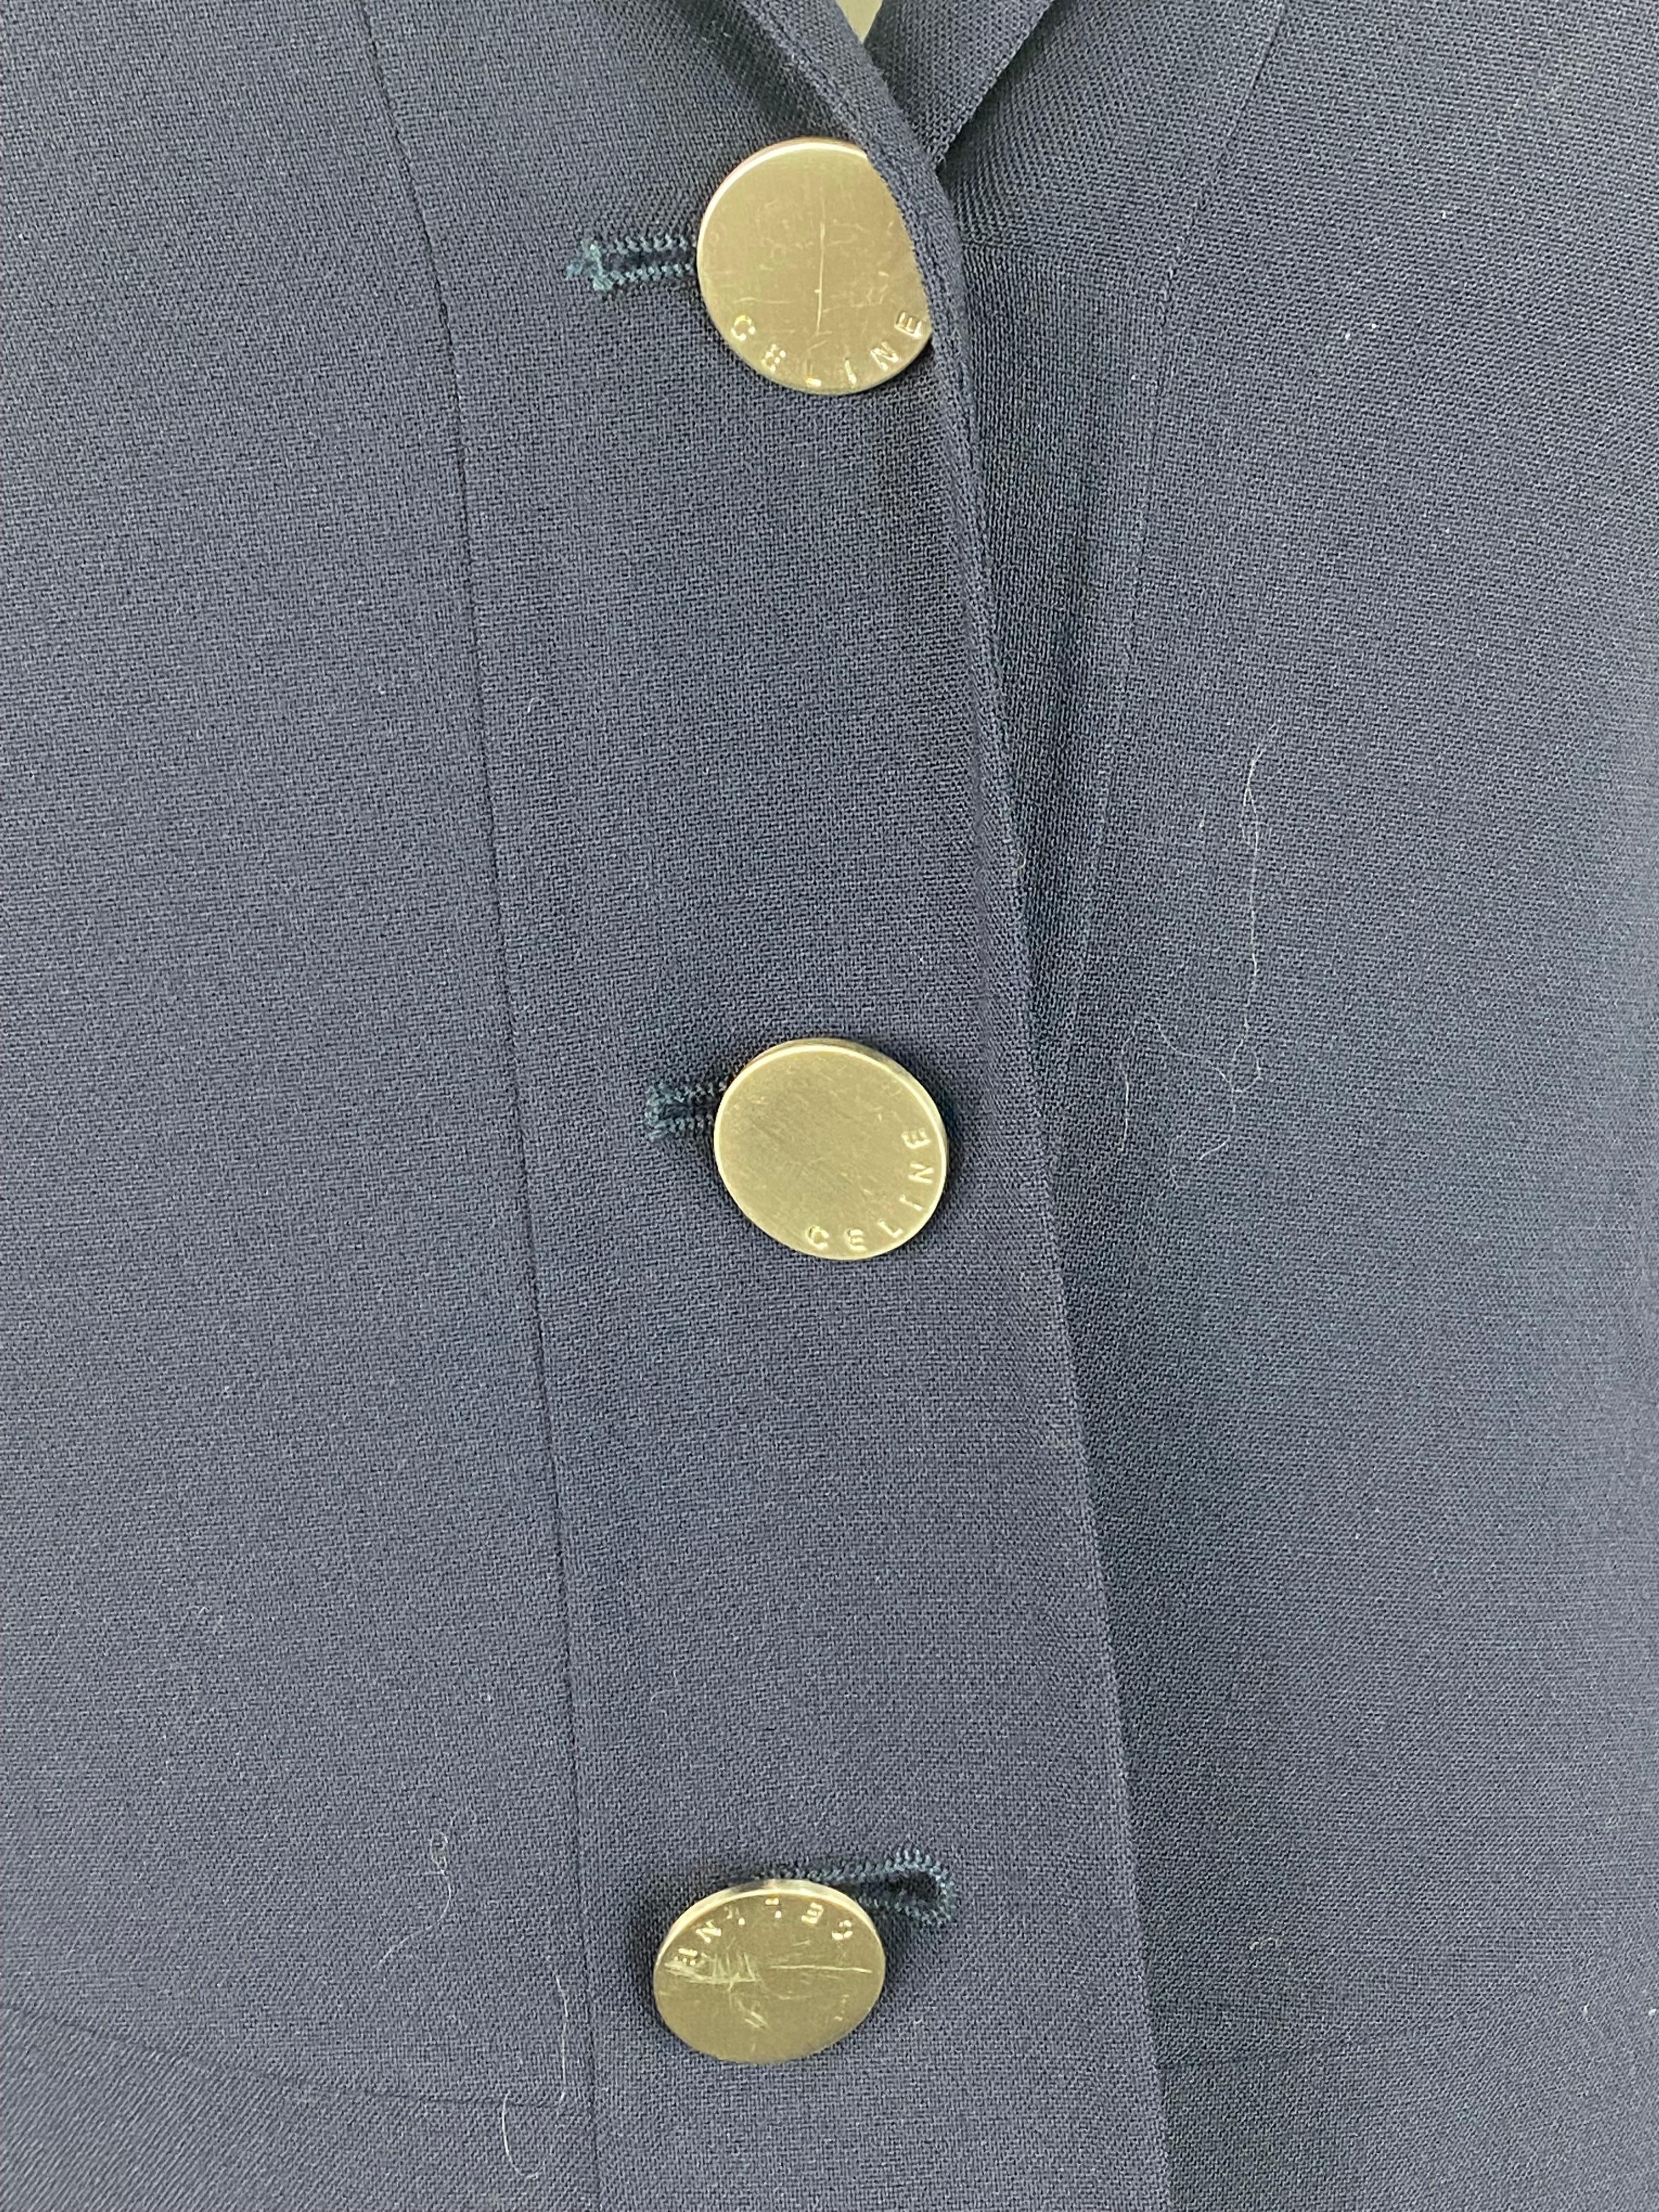 Einzelheiten zum Produkt:

Die Jacke besteht aus 94% Wolle, hat 3/4 lange Ärmel mit drei silberfarbenen Knöpfen und einen passenden Knopfverschluss vorne.